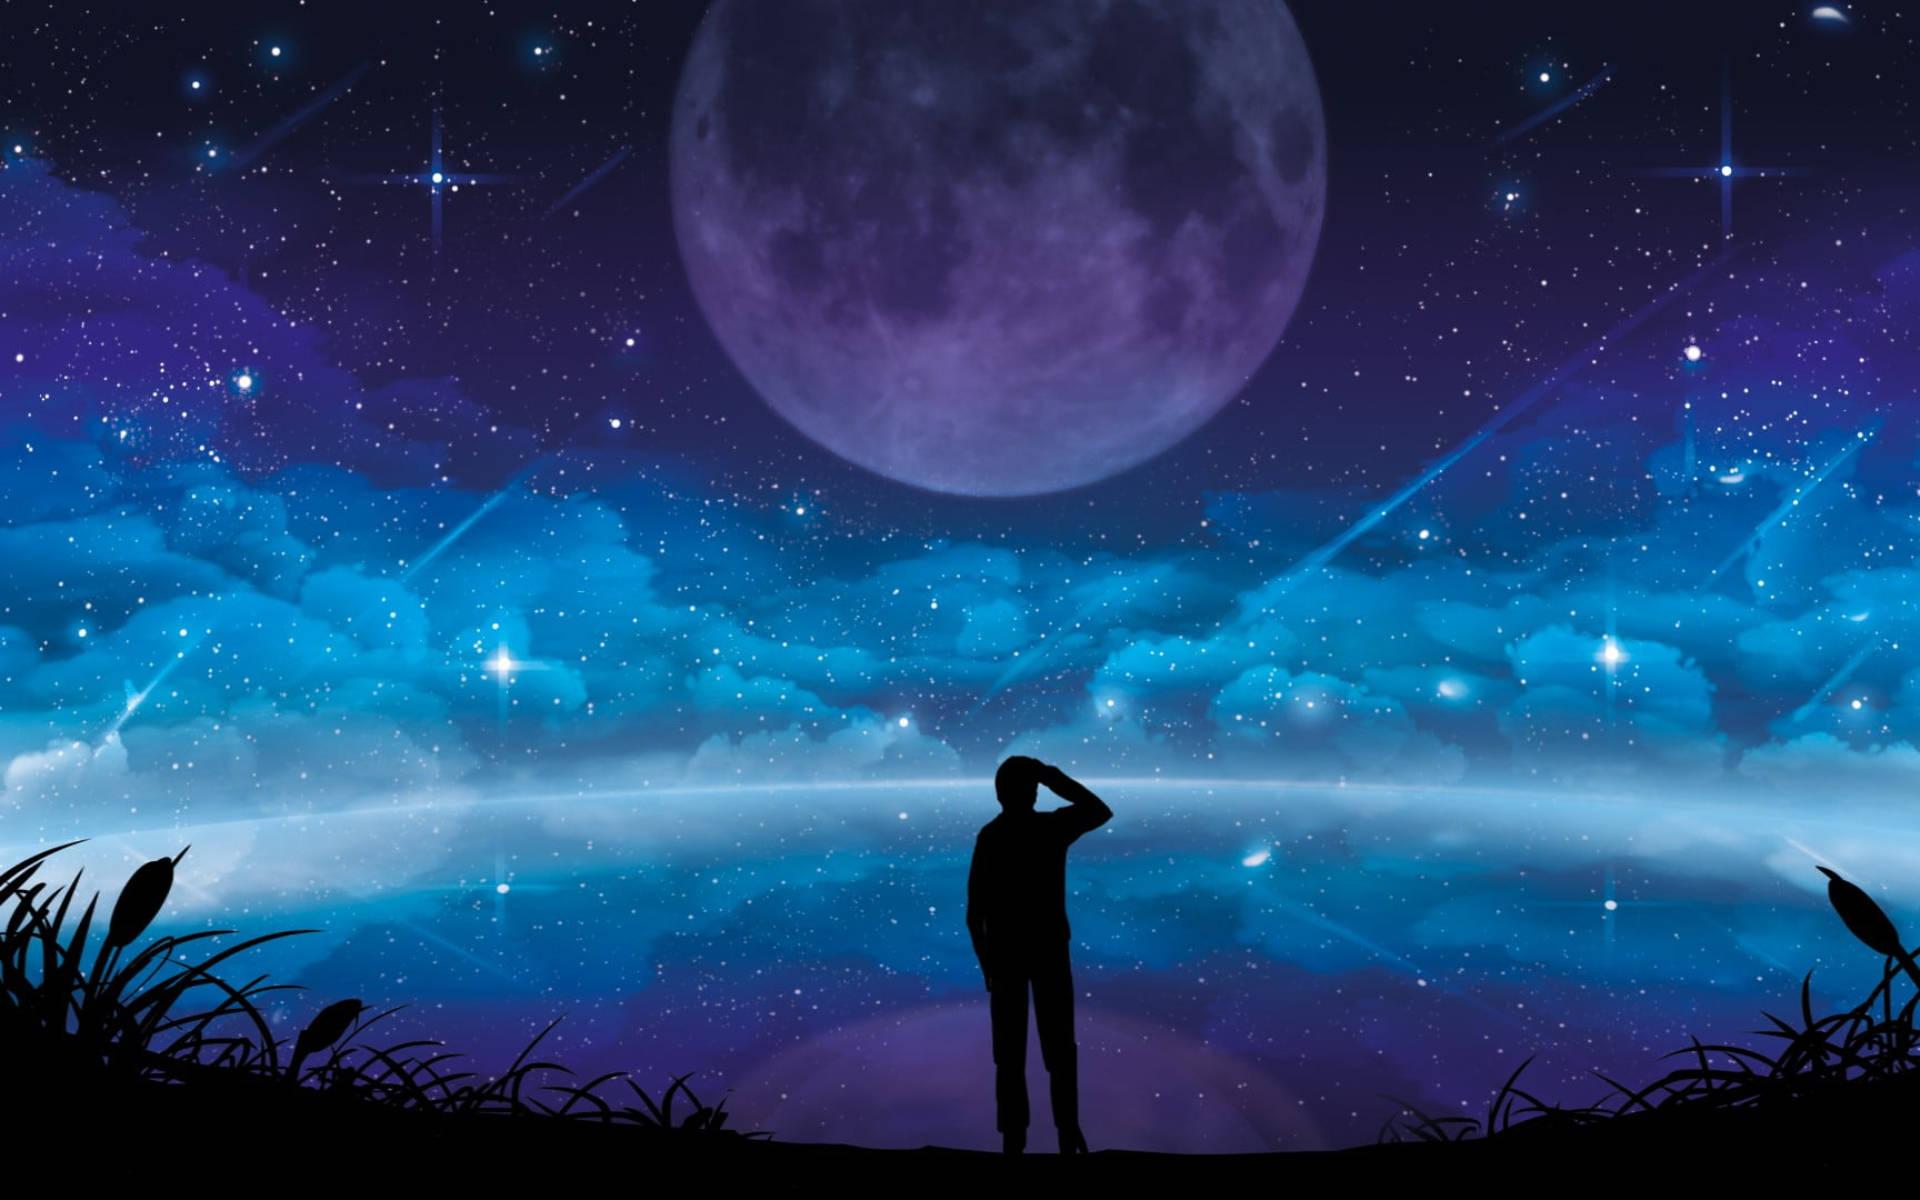 Рисунок мечтая о звездах. Фон ночь. Человек под звездным небом. Ночное небо. Ночное небо со звездами.